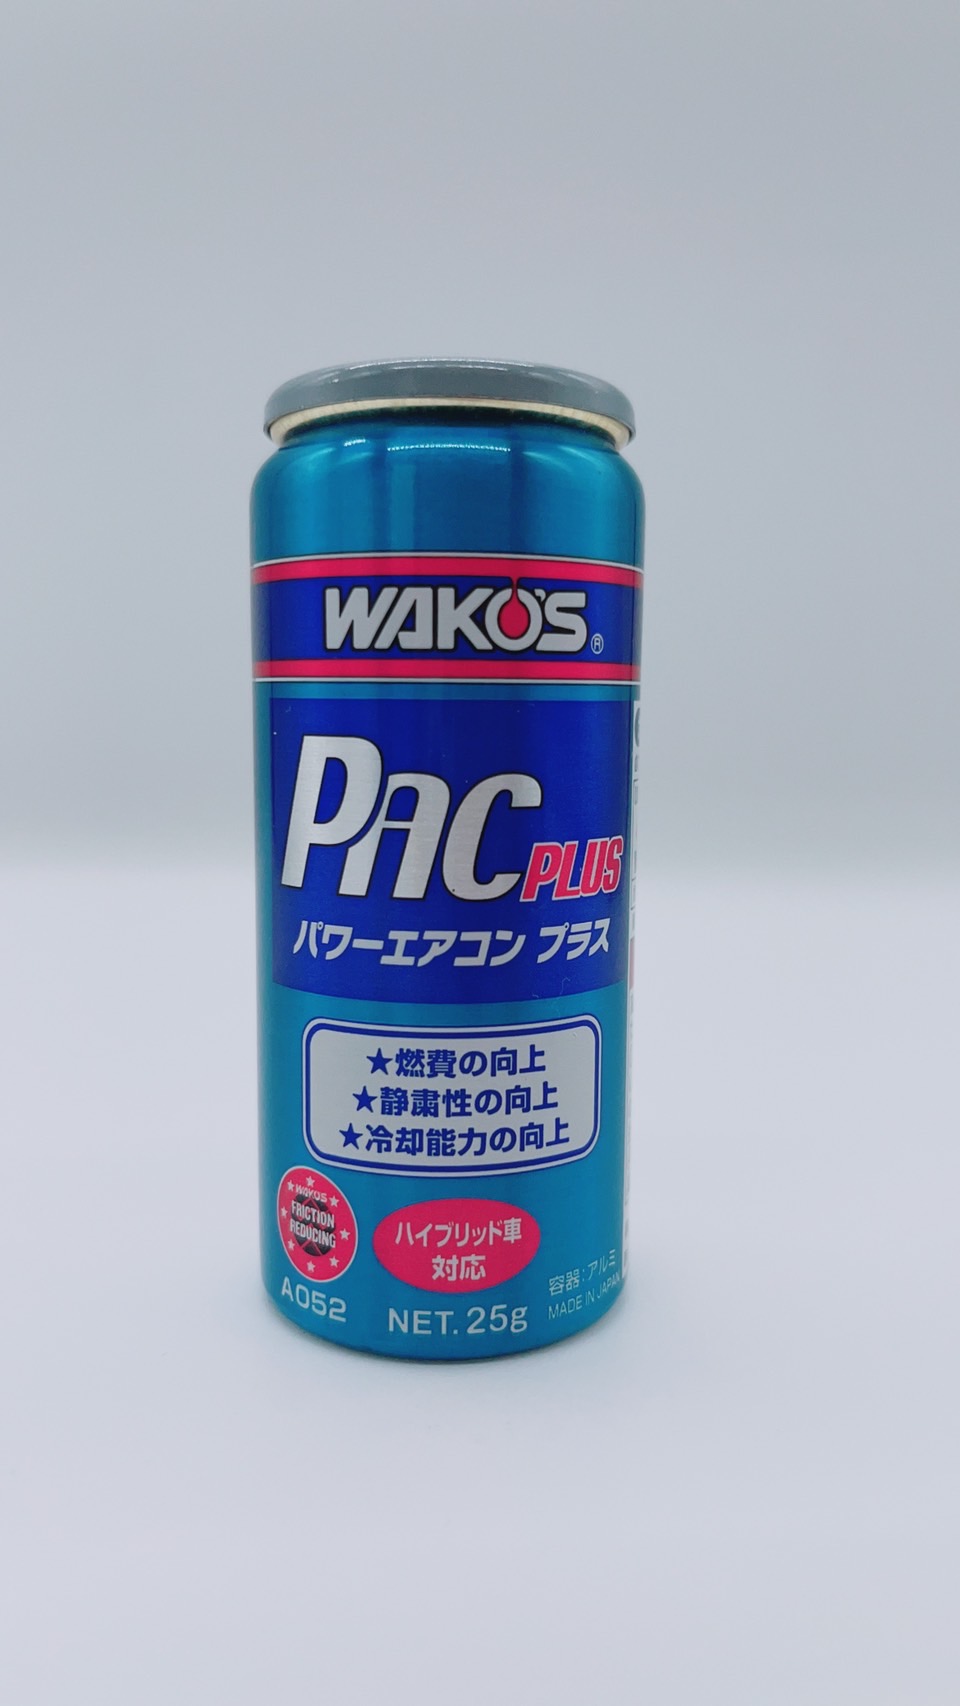 送料無料 カーエアコン用潤滑添加剤 WAKO'S ワコーズ パワーエアコン 人気ショップが最安値挑戦 激安通販 プラス A052